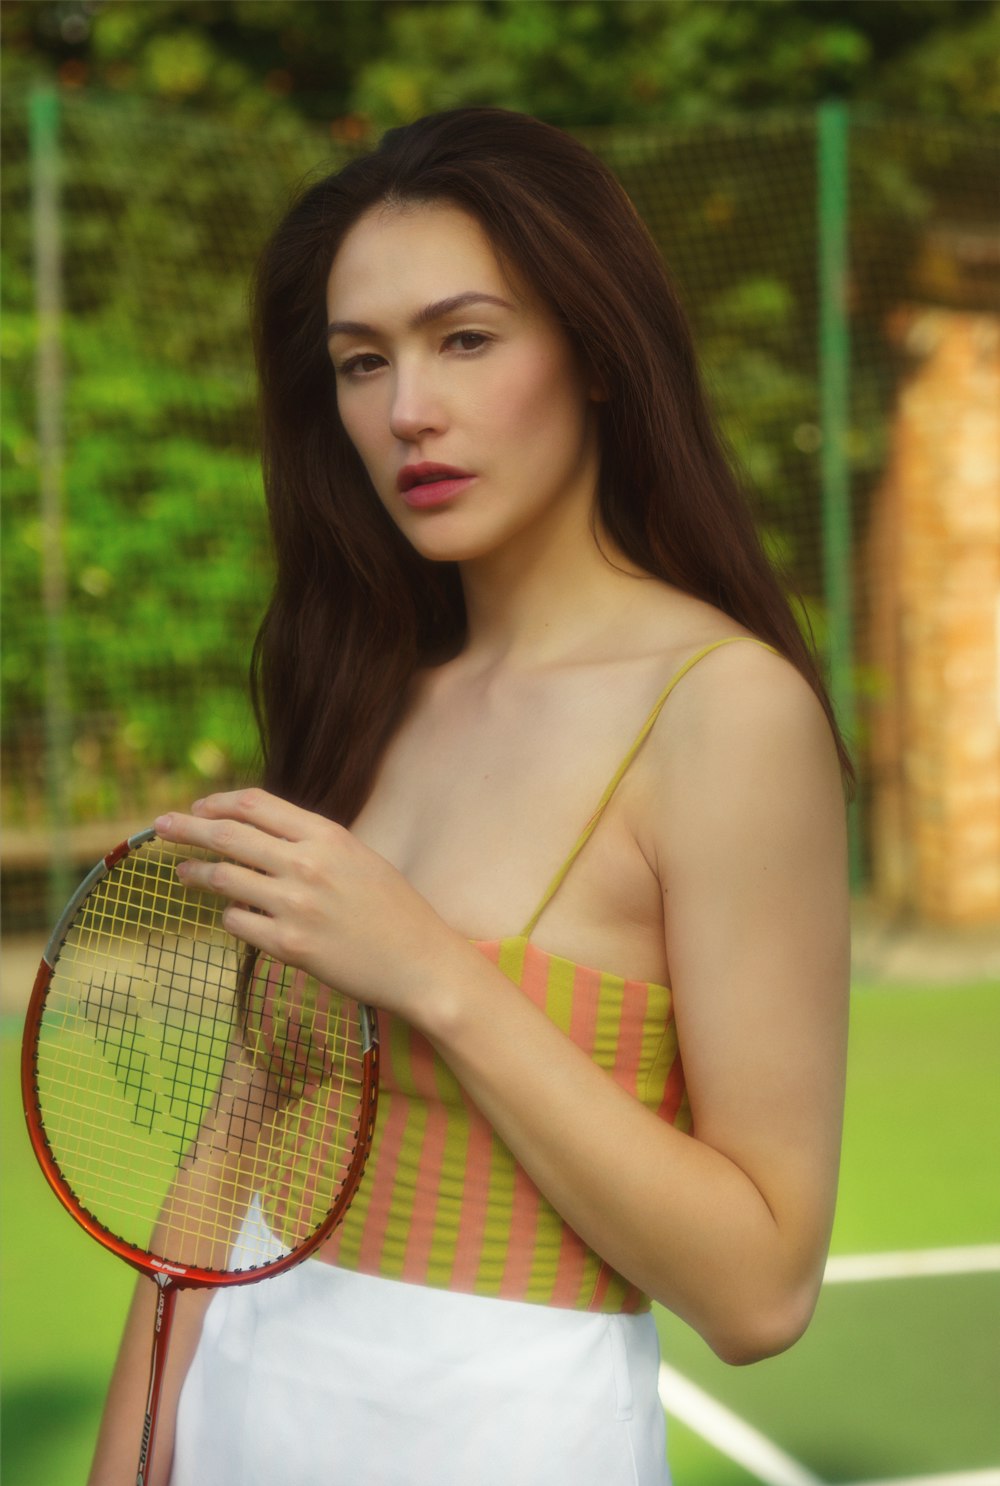 Mujer en la parte superior del bikini amarillo y verde sosteniendo la raqueta de tenis